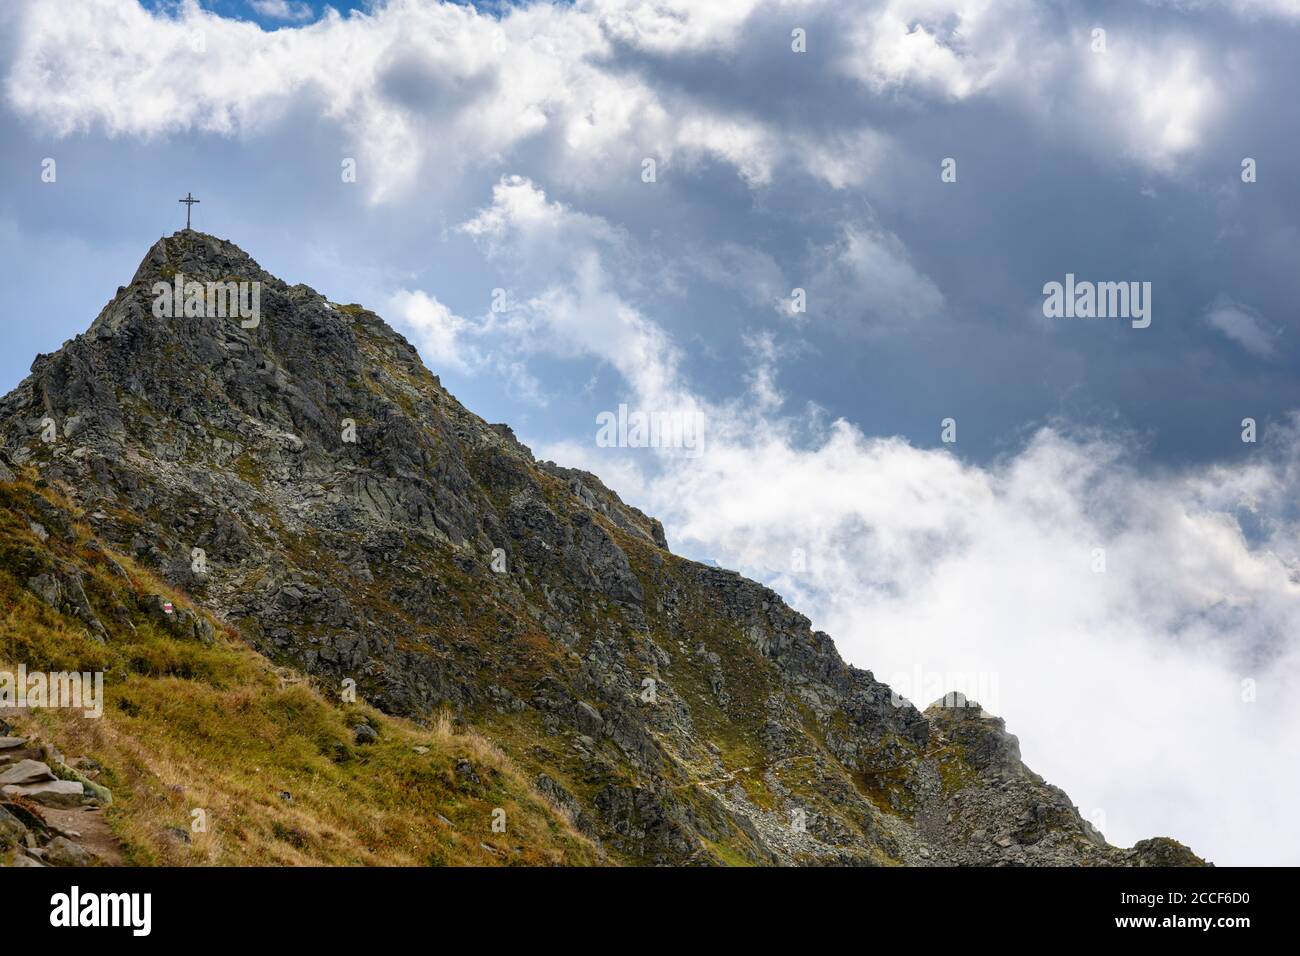 Autriche, Montafon, Schruns, le Zamangspitze (2387 m). Banque D'Images